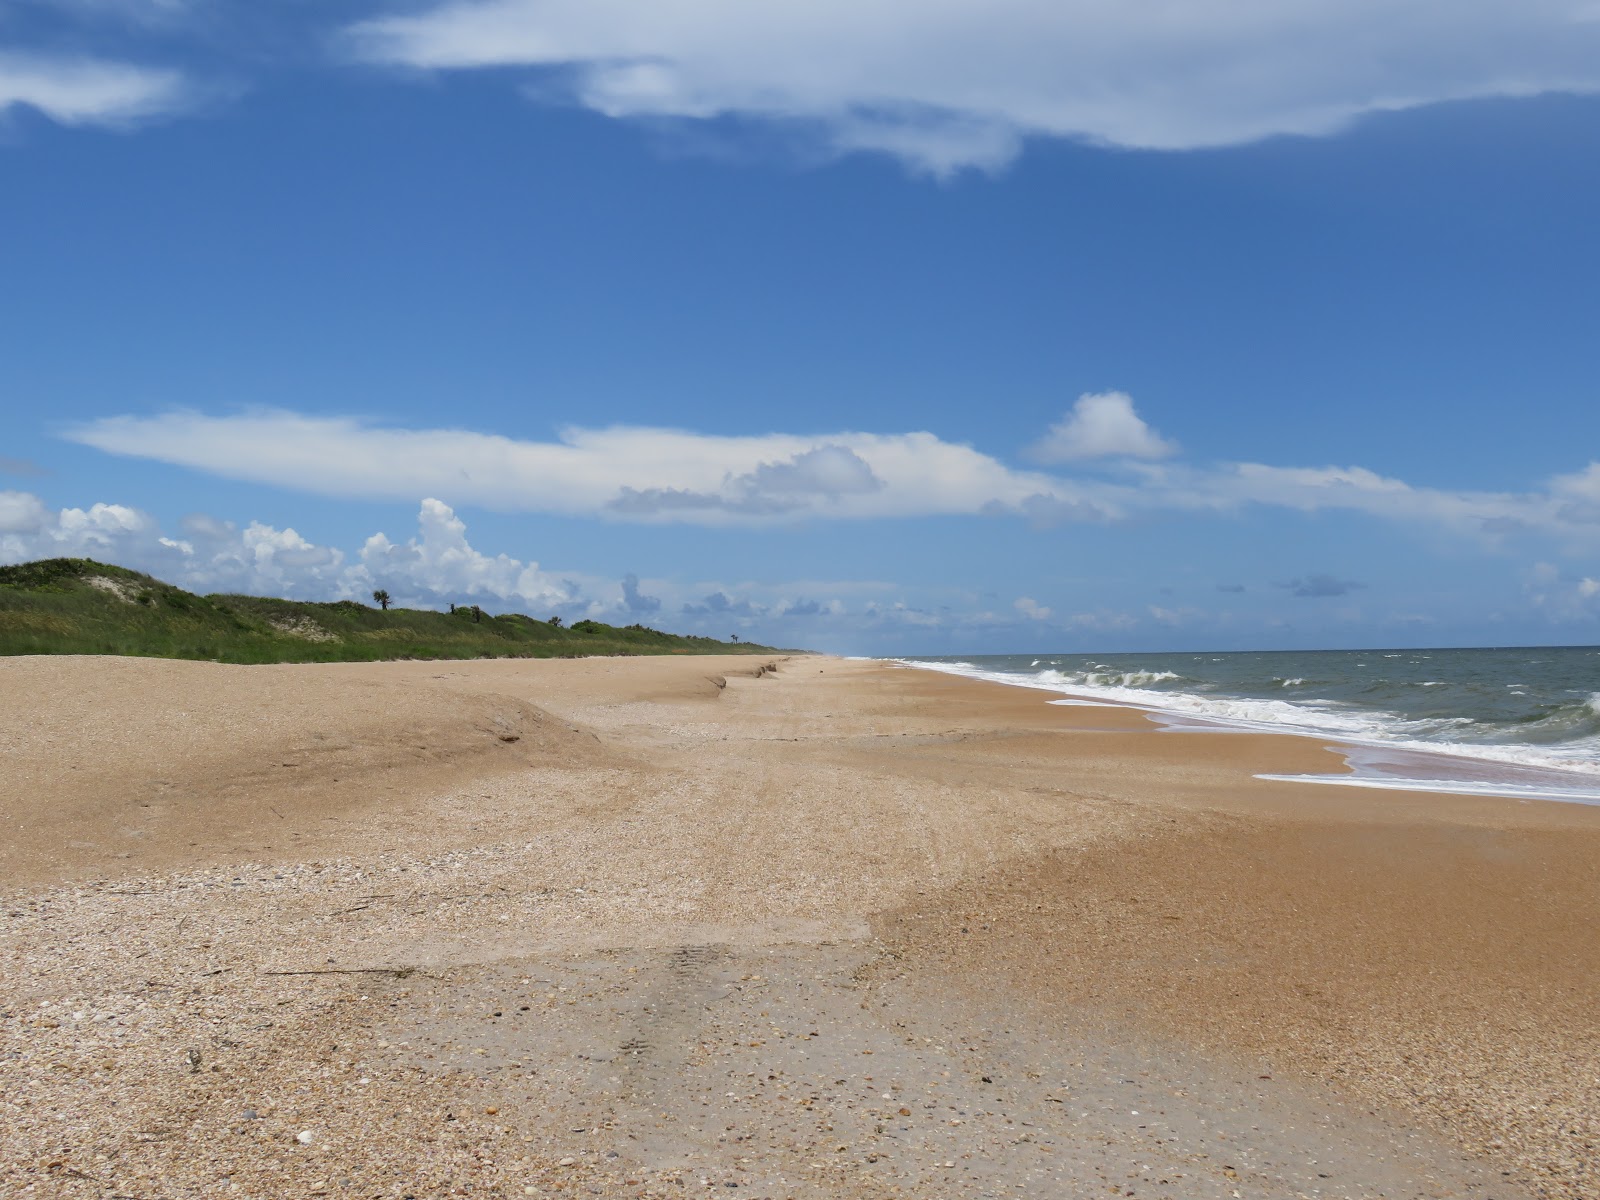 Foto af Guana Reserve beach - populært sted blandt afslapningskendere